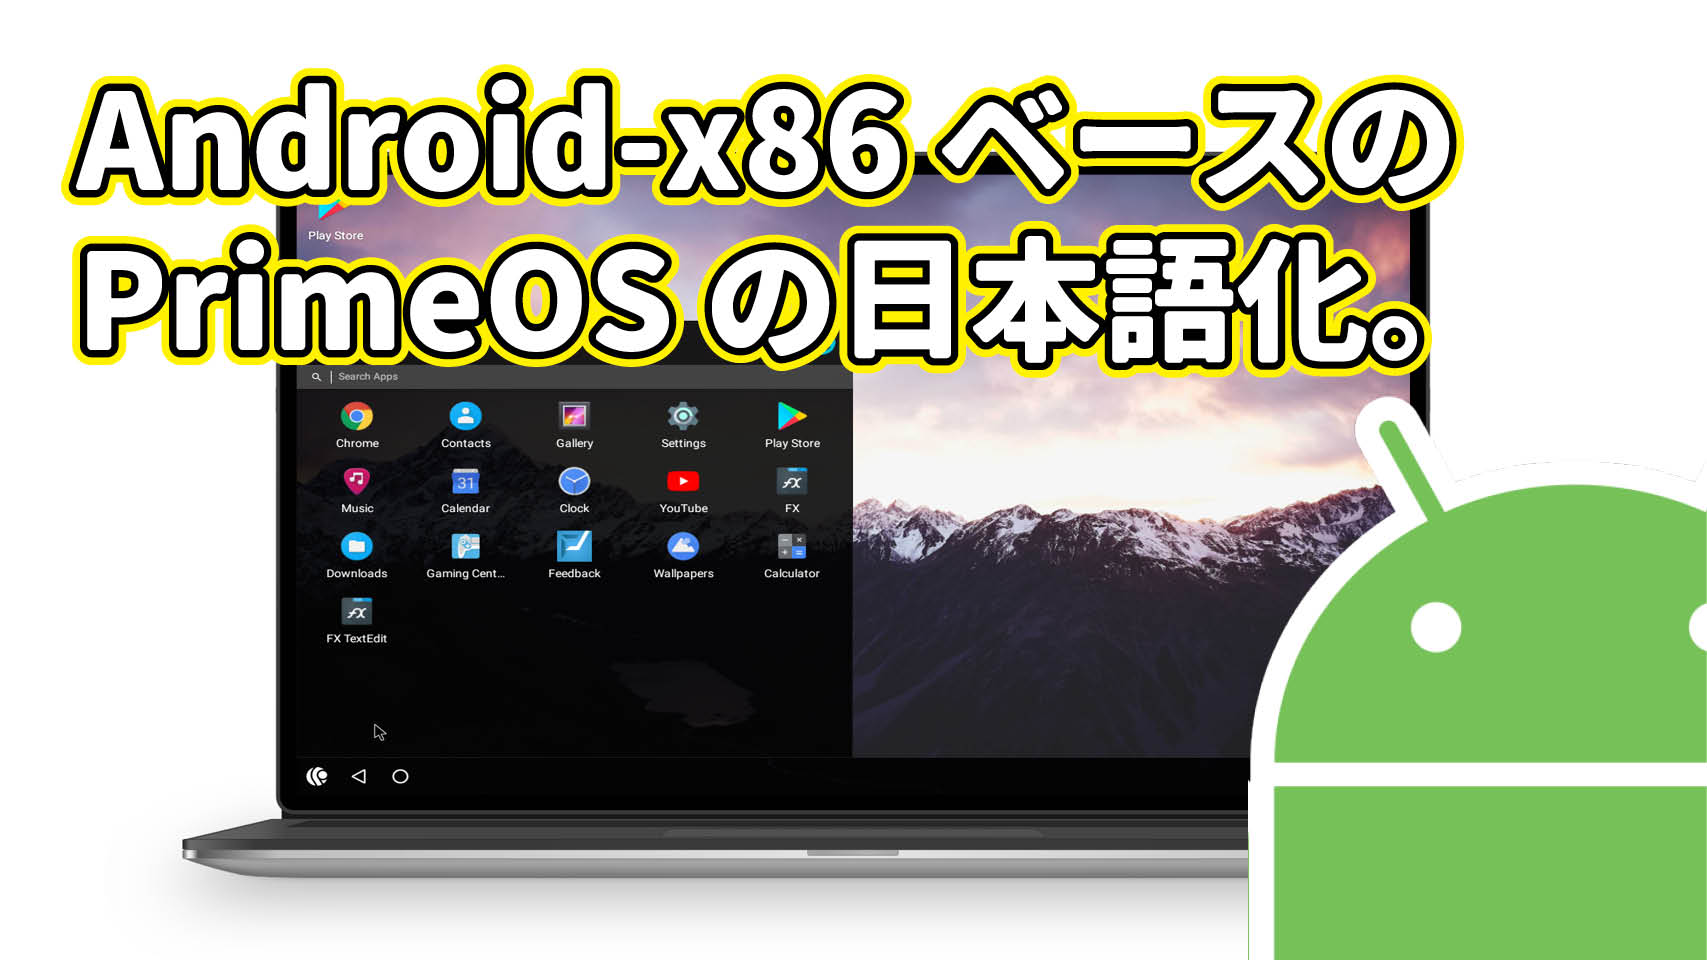 Android-x86 ベース PrimeOS の日本語化。